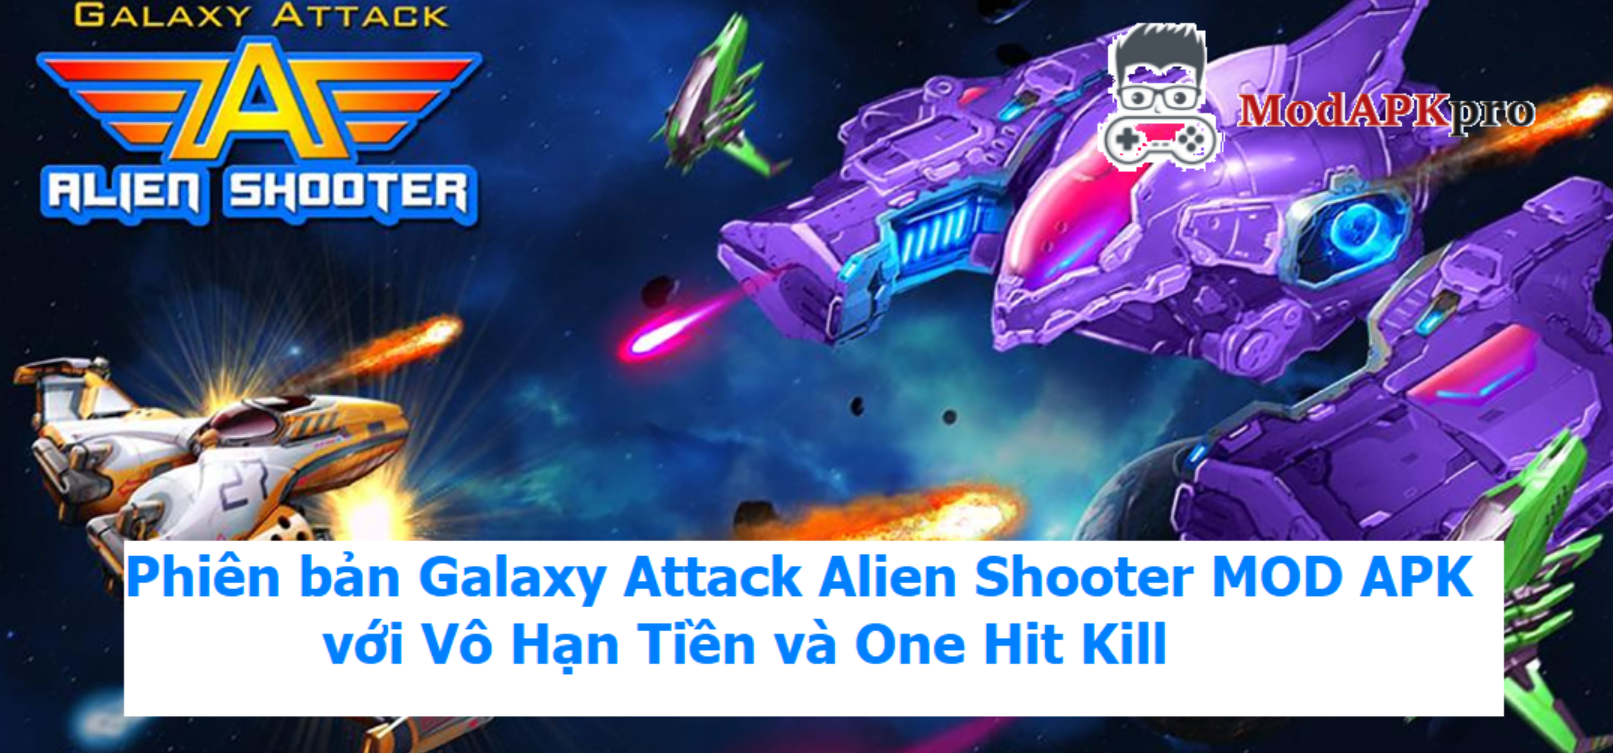 Galaxy Attack Alien Shooter (5)